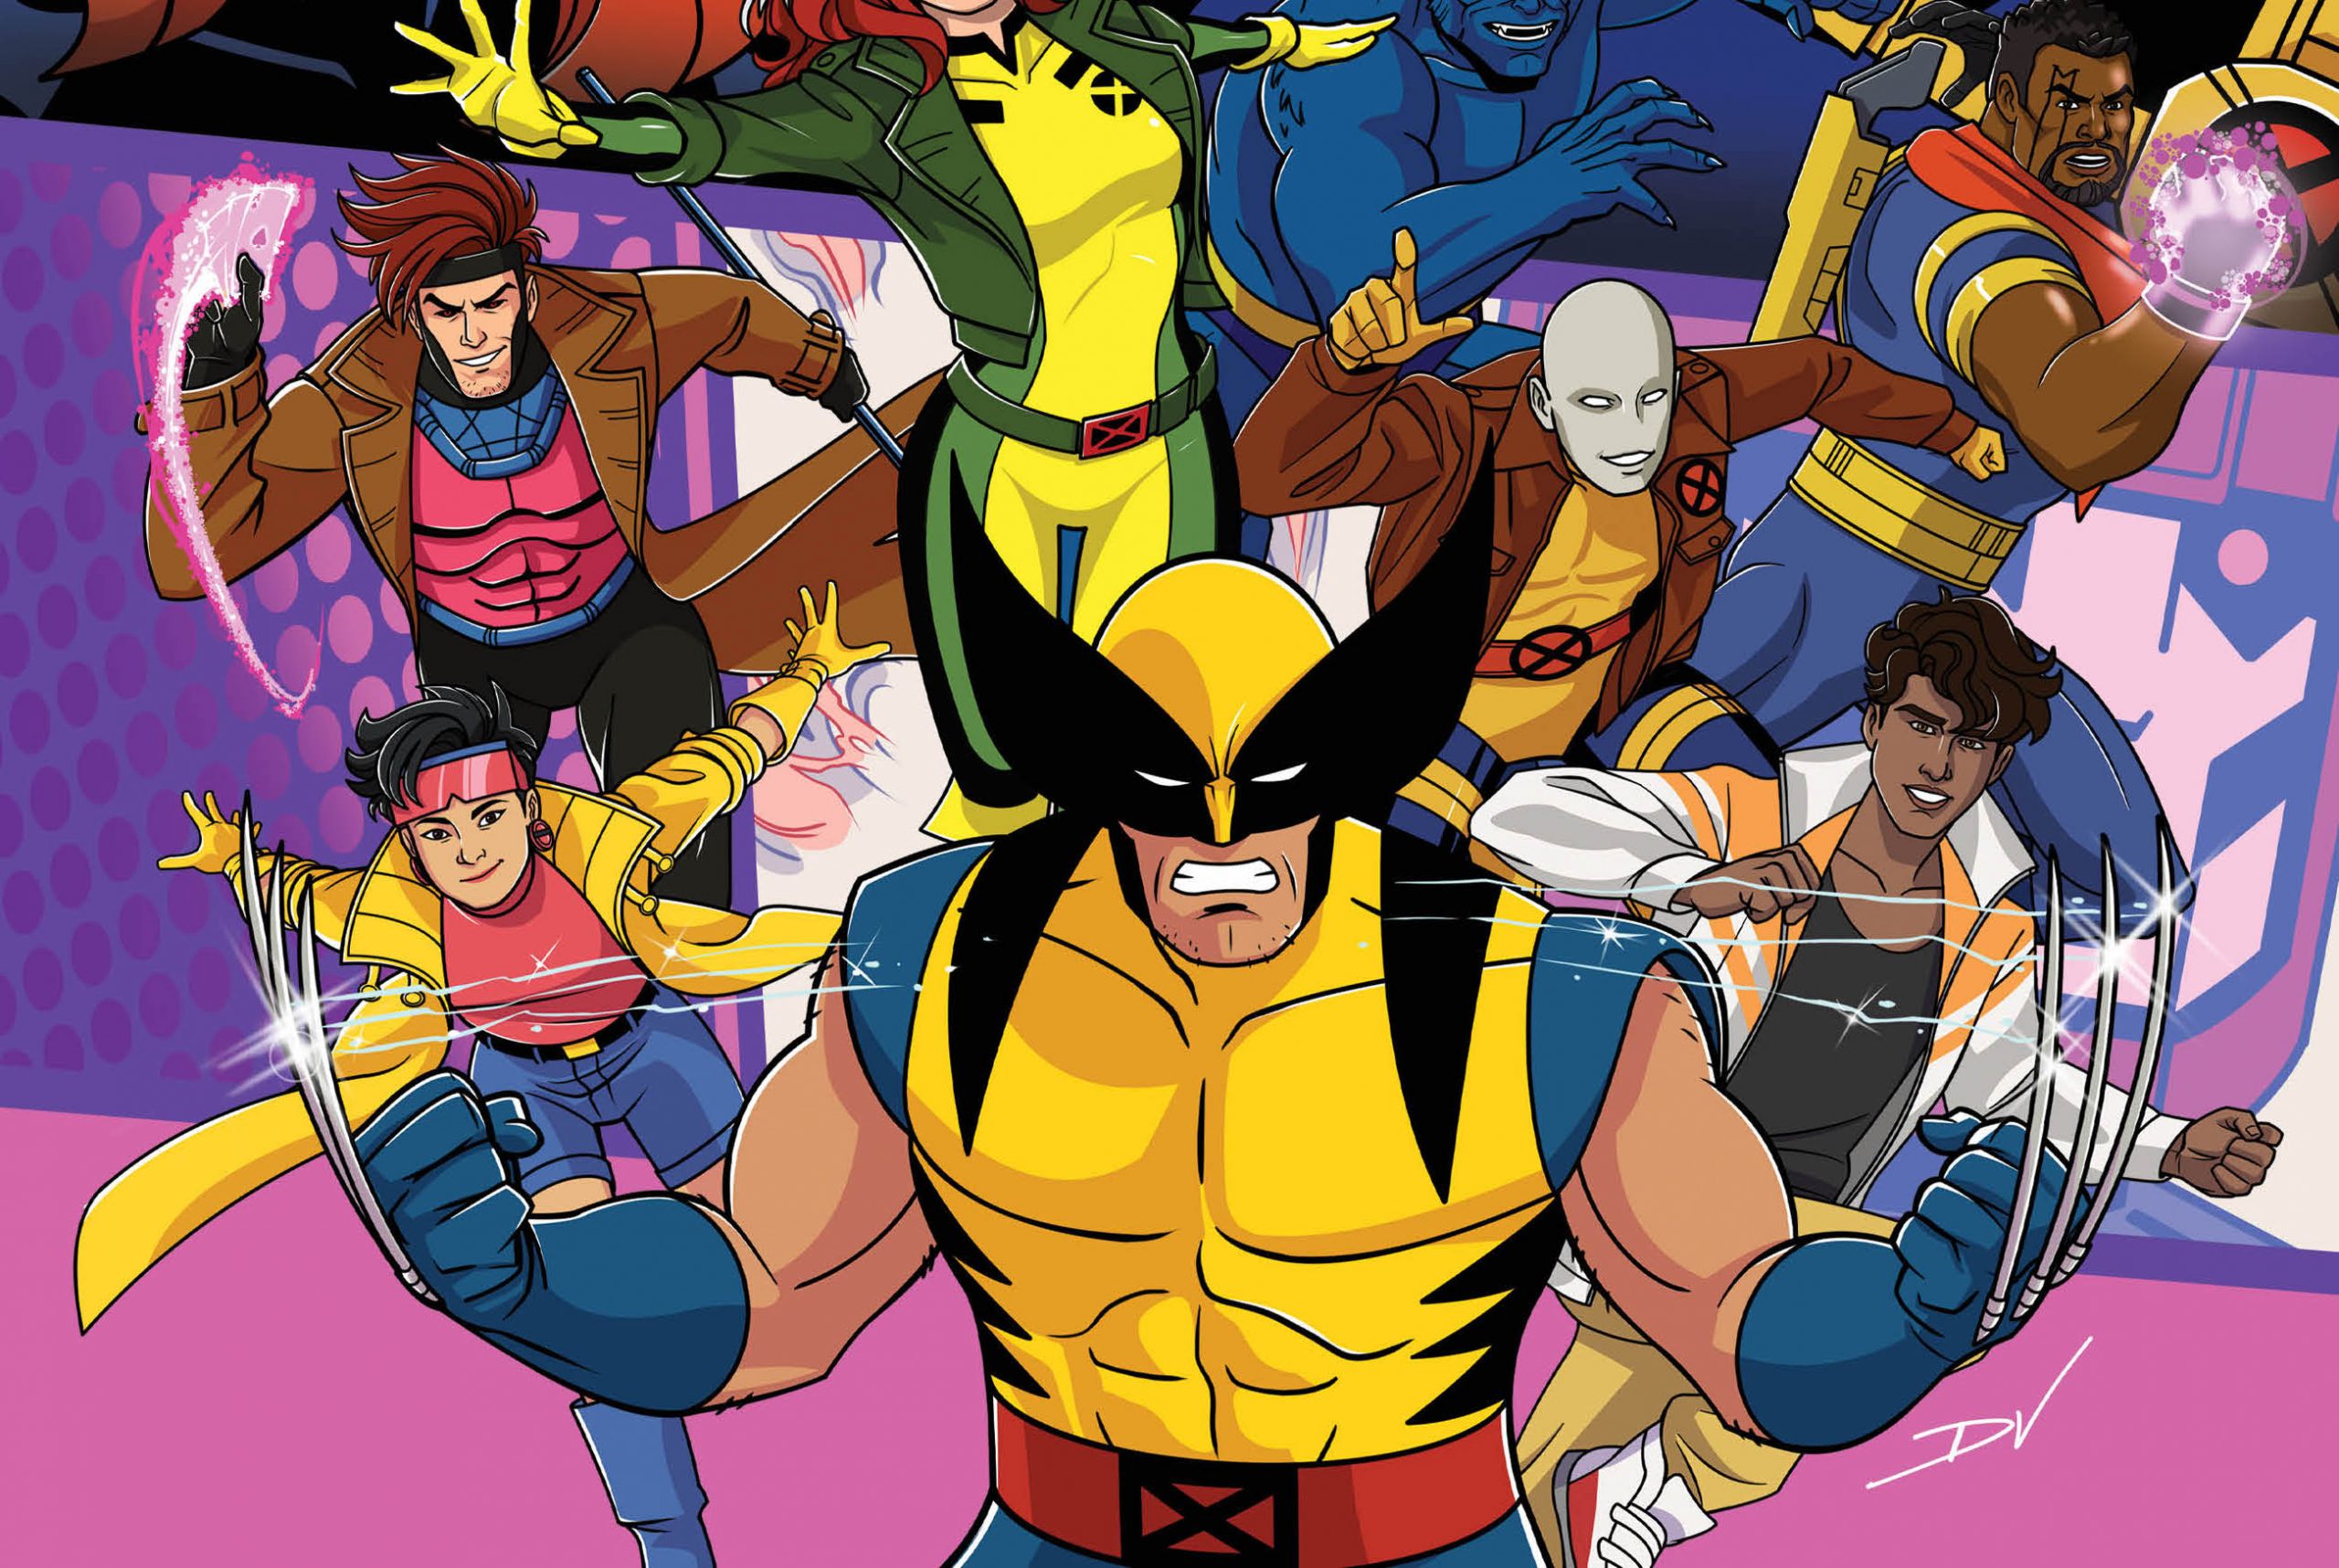 X-Men '97 variant cover for 'X-Men: Hellfire Gala' #1 revealed